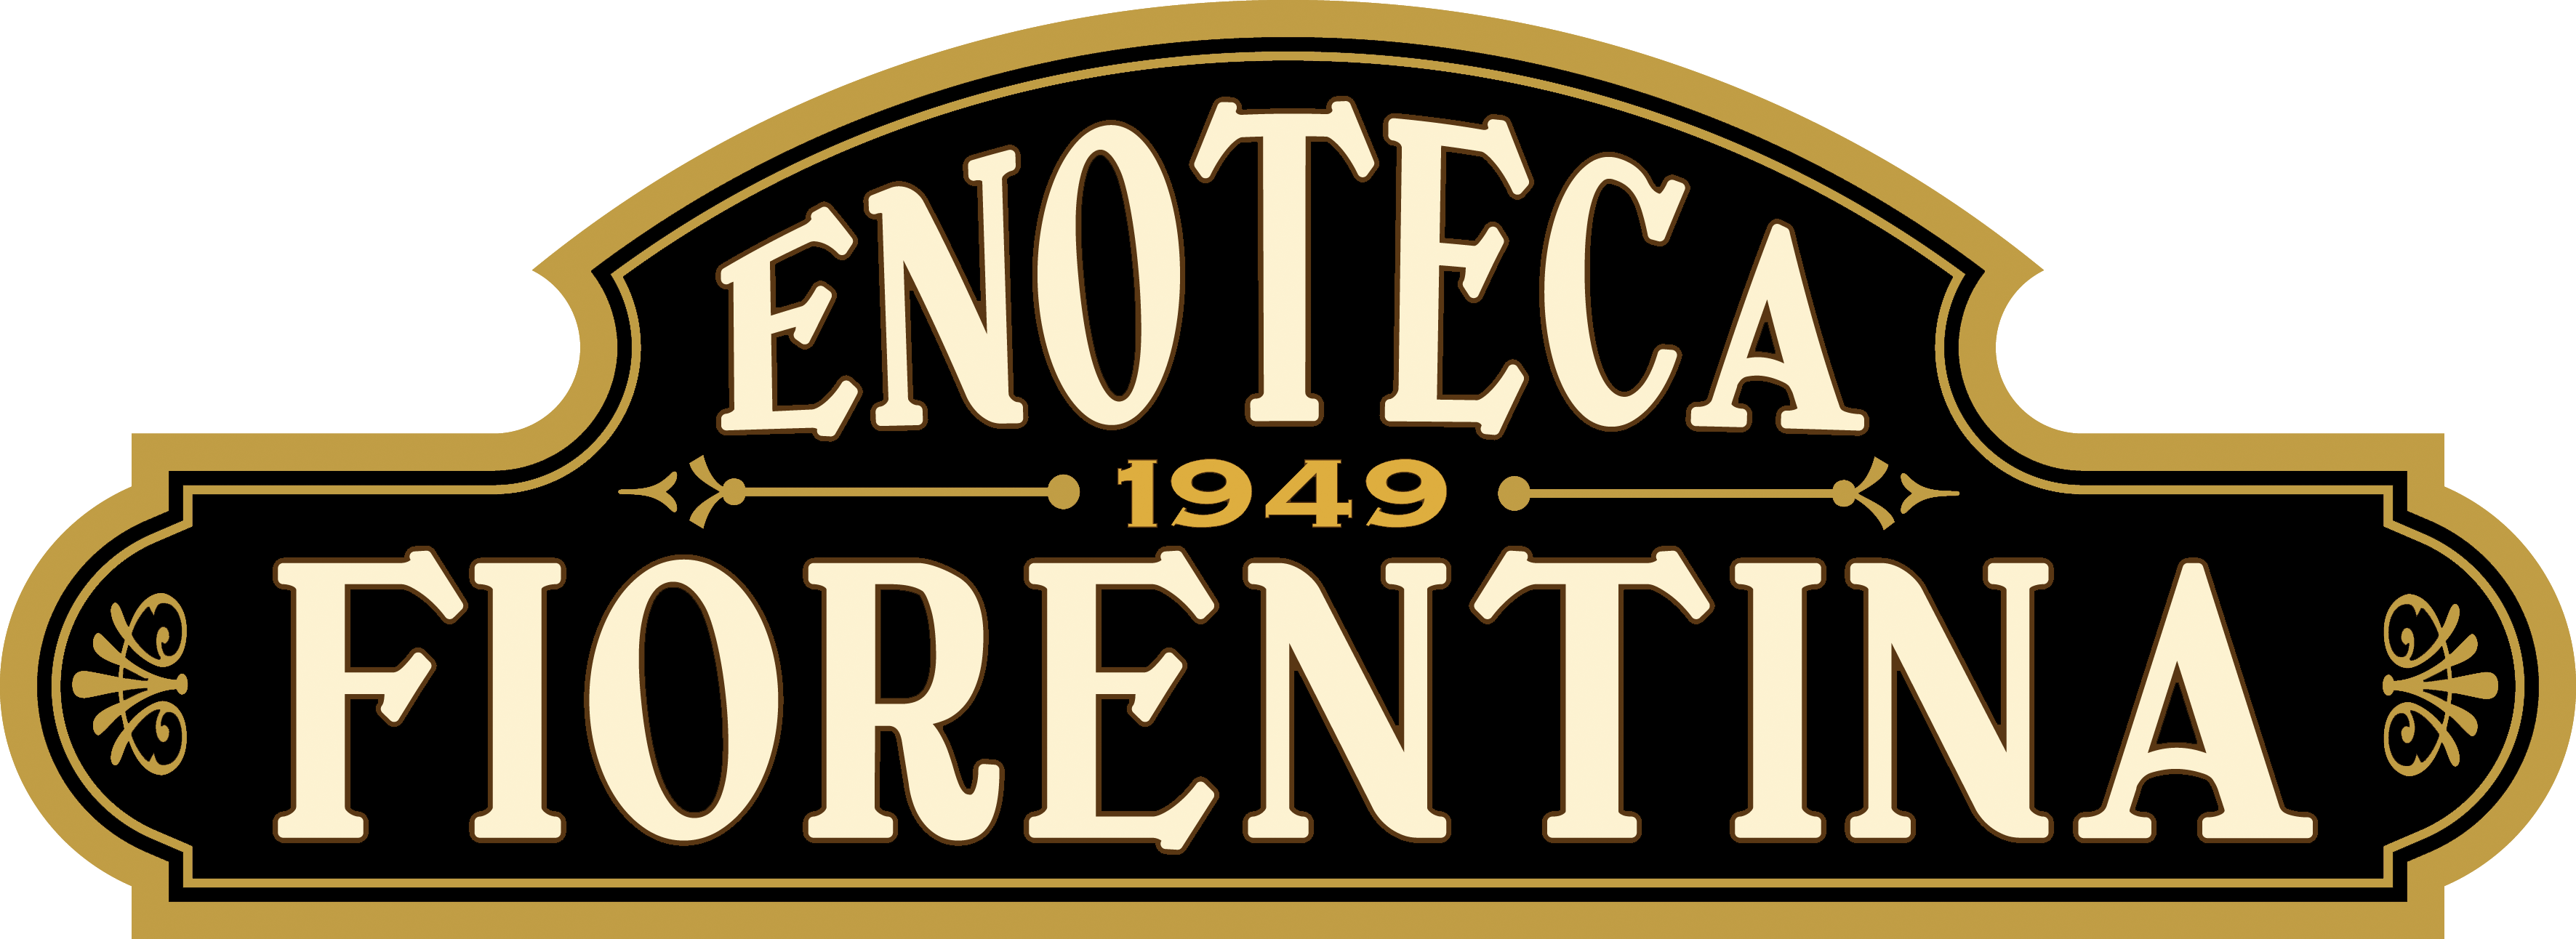 Enoteca Fiorentina Logo